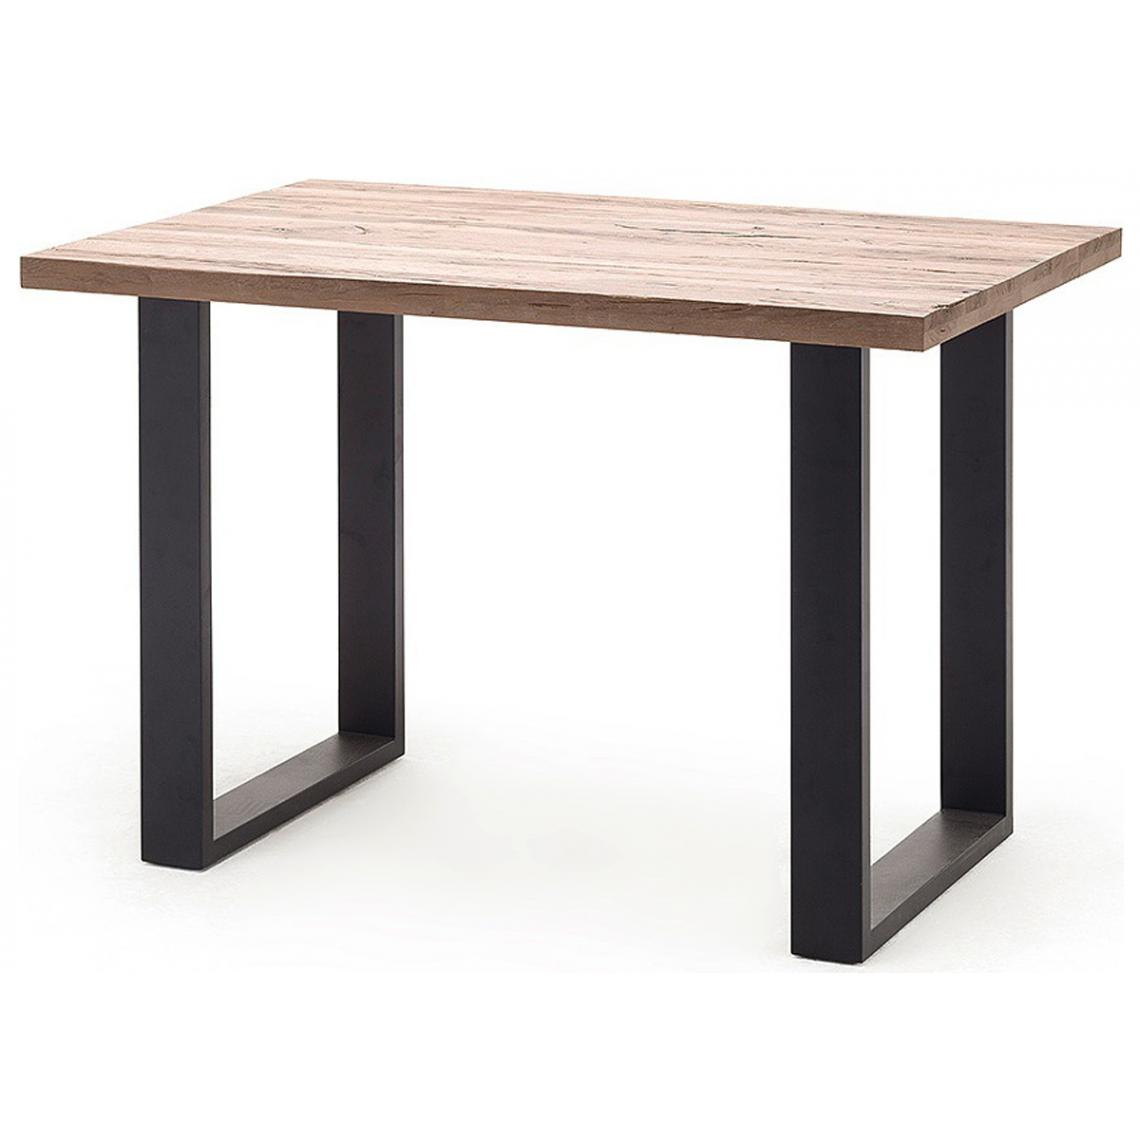 Pegane - Table haute en chêne cérusé et métal laqué anthracite - Longueur 160 x Hauteur 107 x Profondeur 100 cm - Tables à manger